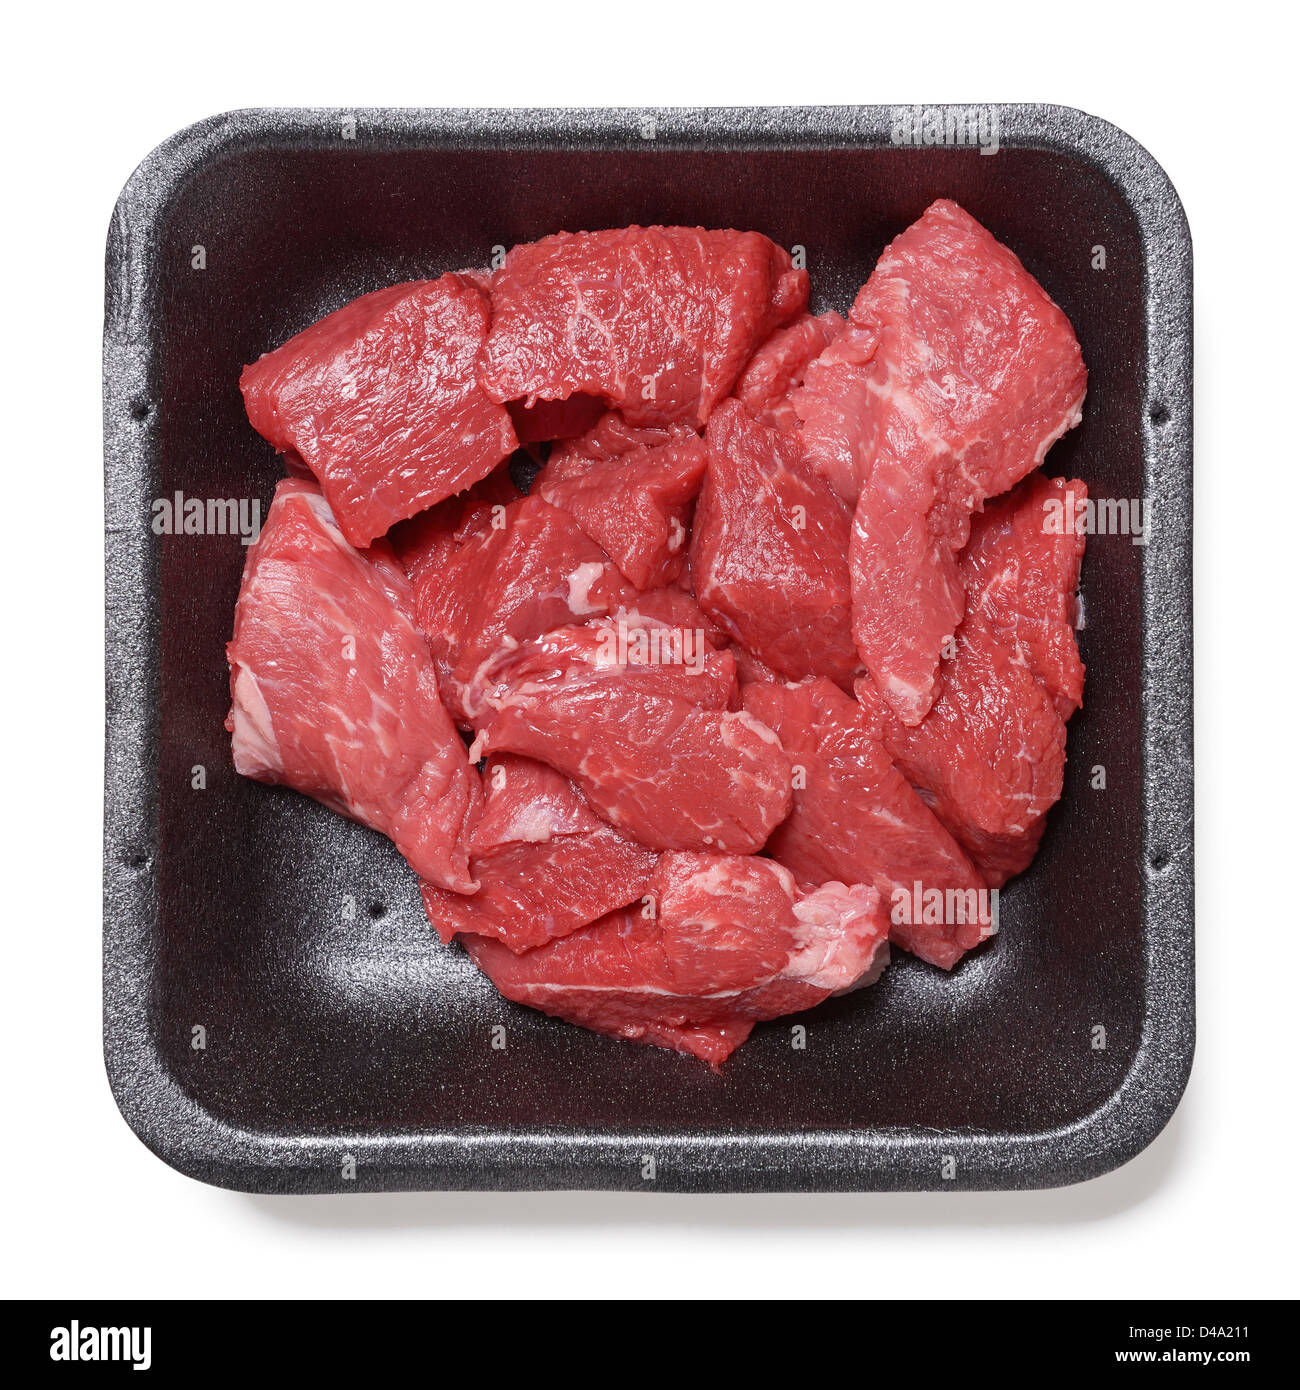 Bandeja de plástico del supermercado la carne Foto de stock